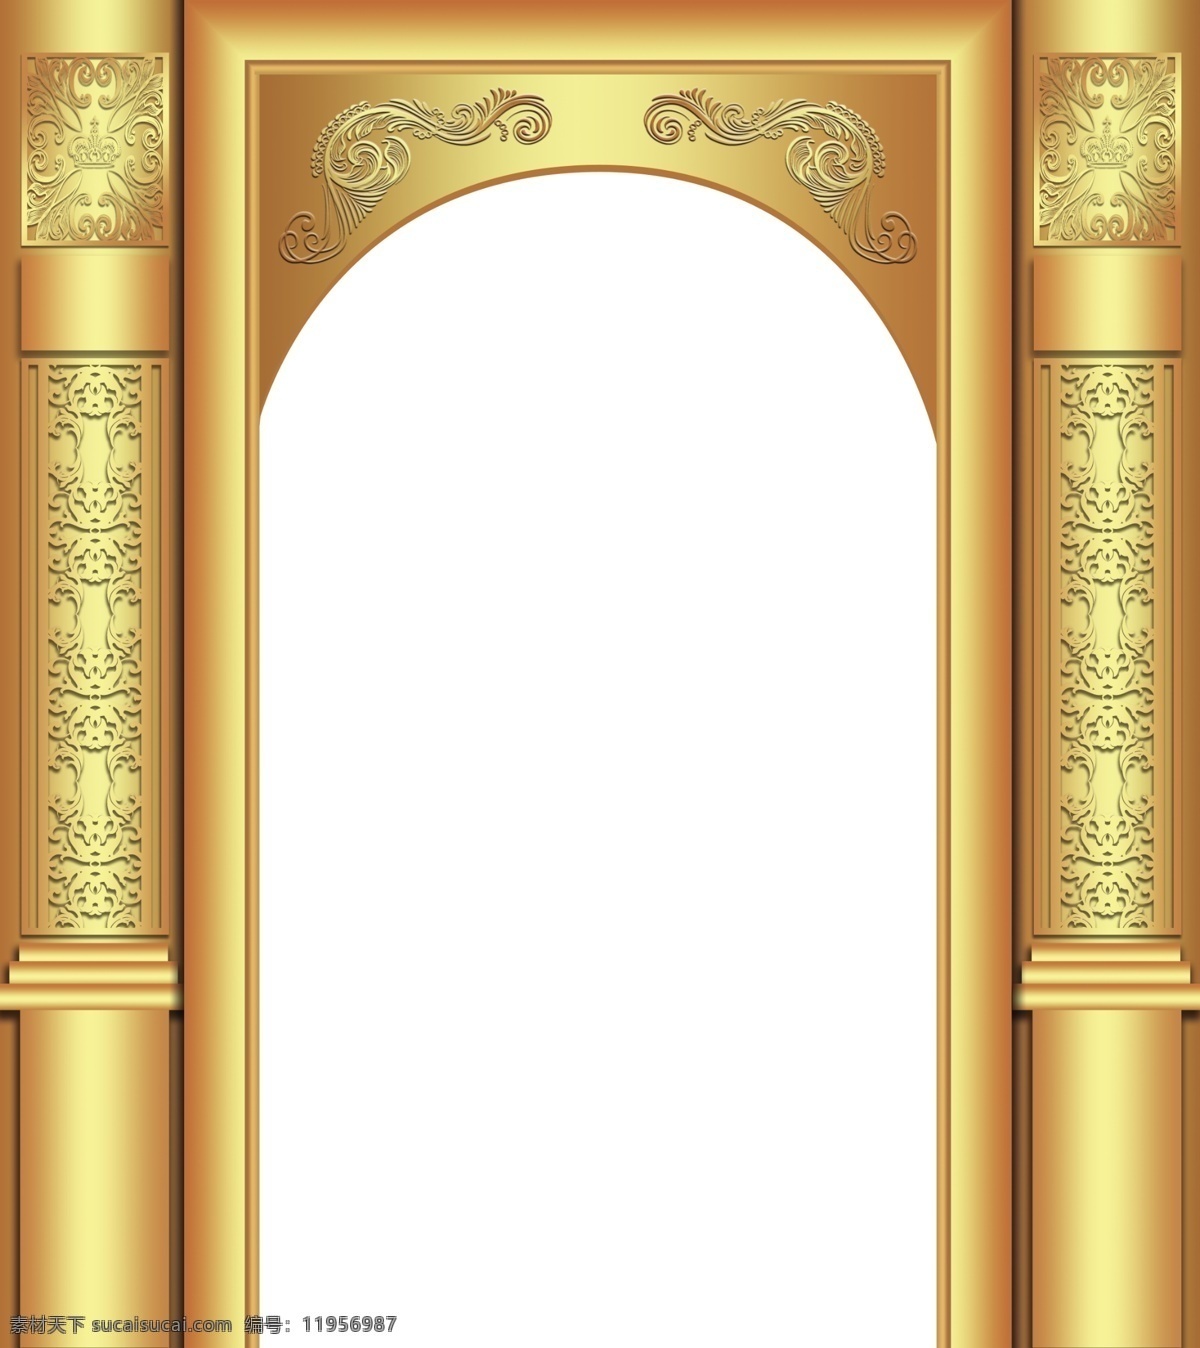 婚礼设计 金色拱门 欧式拱门 柱子 欧式花纹 高贵大气 方形拱门 婚礼背景 ps 分层